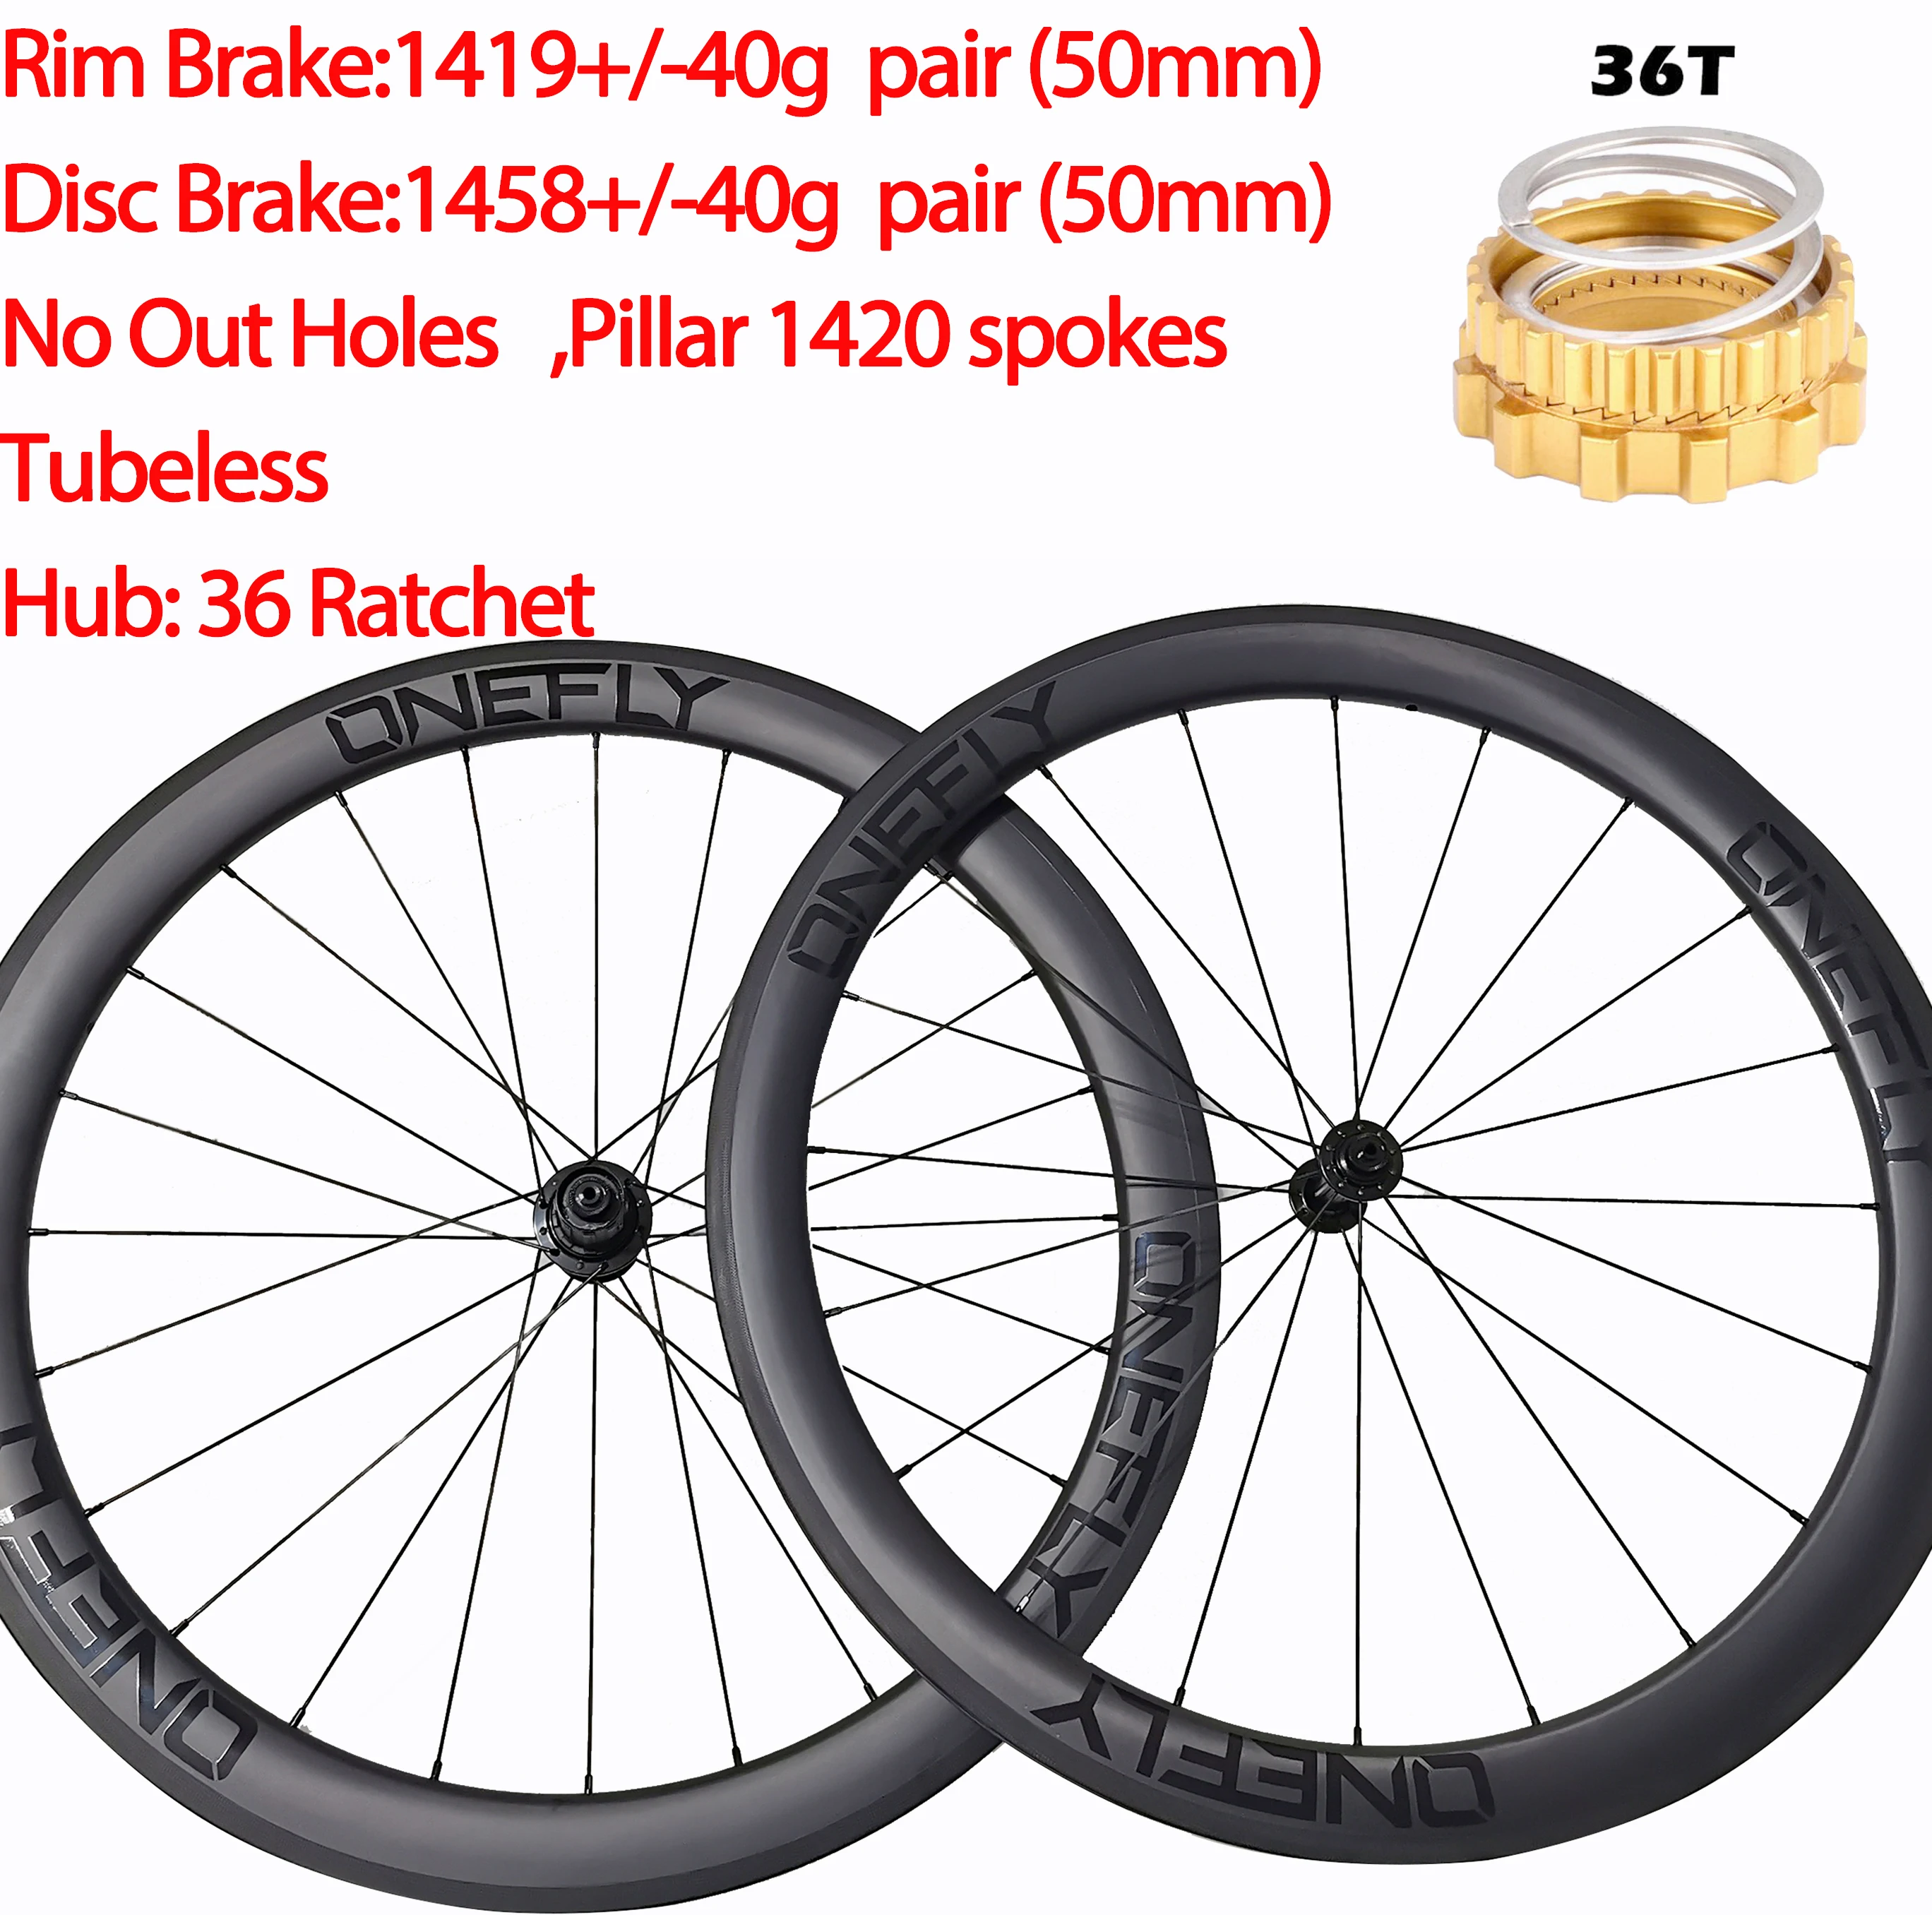 

ONEFLY Width 25mm Super Light Carbon Road Bike Wheels Clincher Tubeless 36 Ratchet Disc Rim Brake 38mm/50mm Wheelset 700C